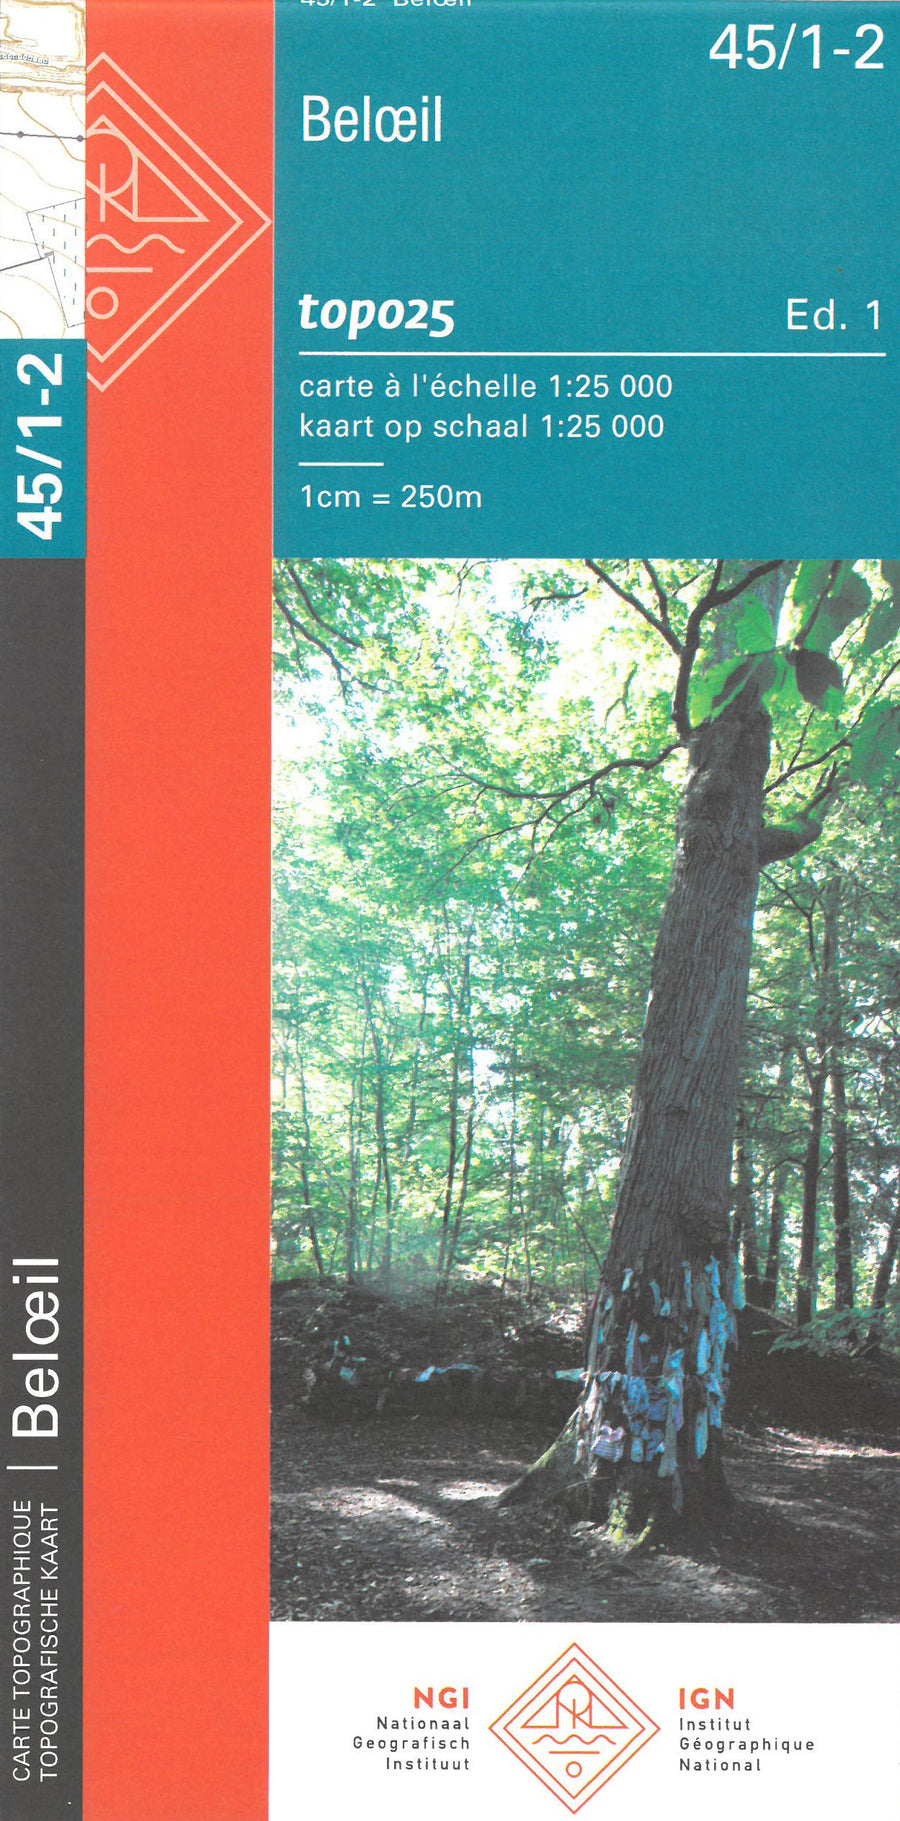 Carte topographique n° 45/1-2 - Beloeil (Belgique) | NGI topo 25 carte pliée IGN Belgique 